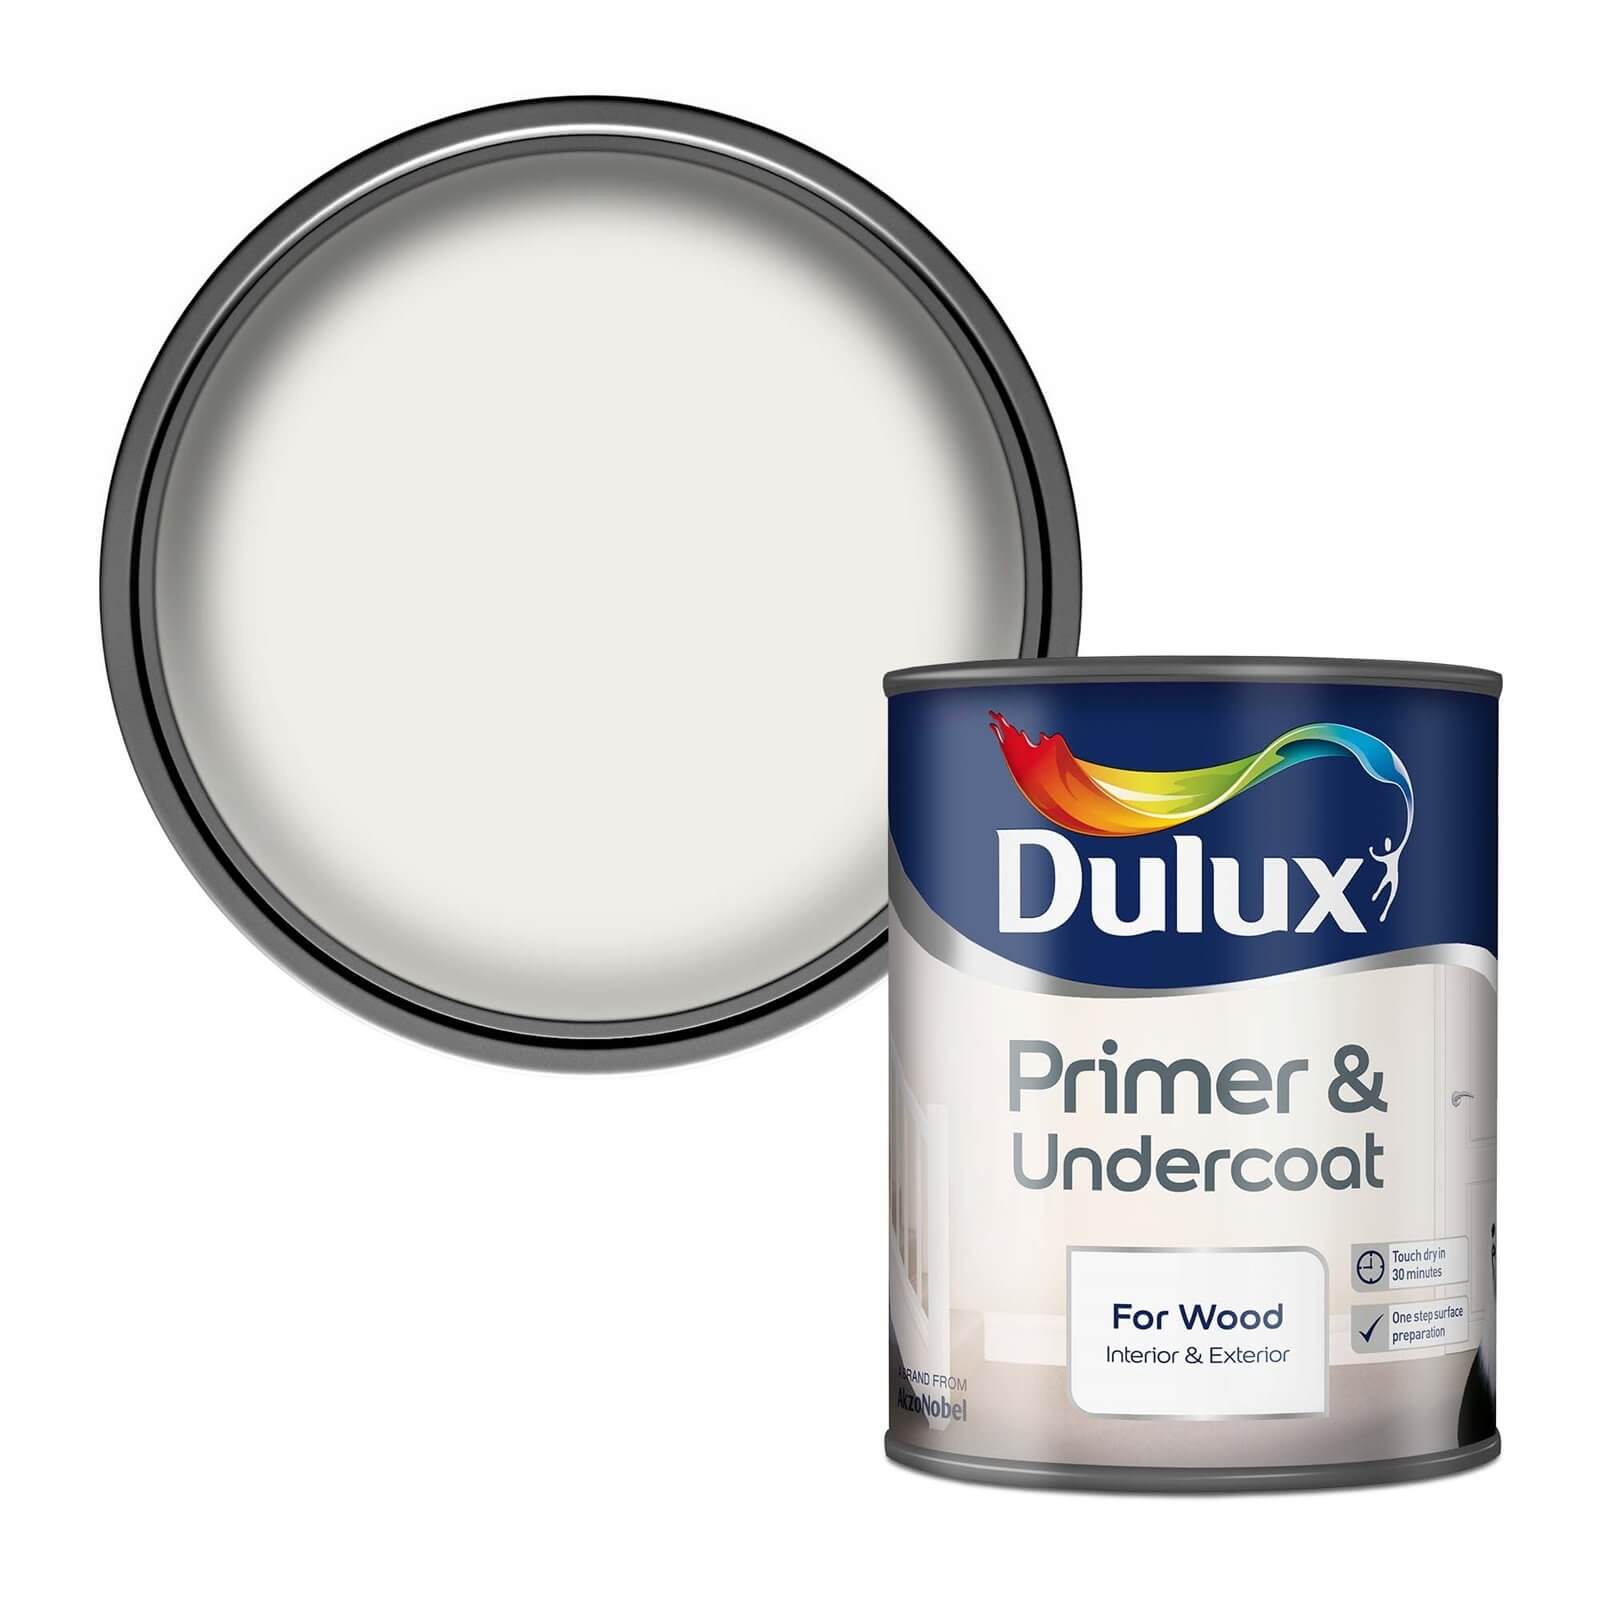 Dulux Primer & Undercoat for Interior & Exterior Wood 750ml